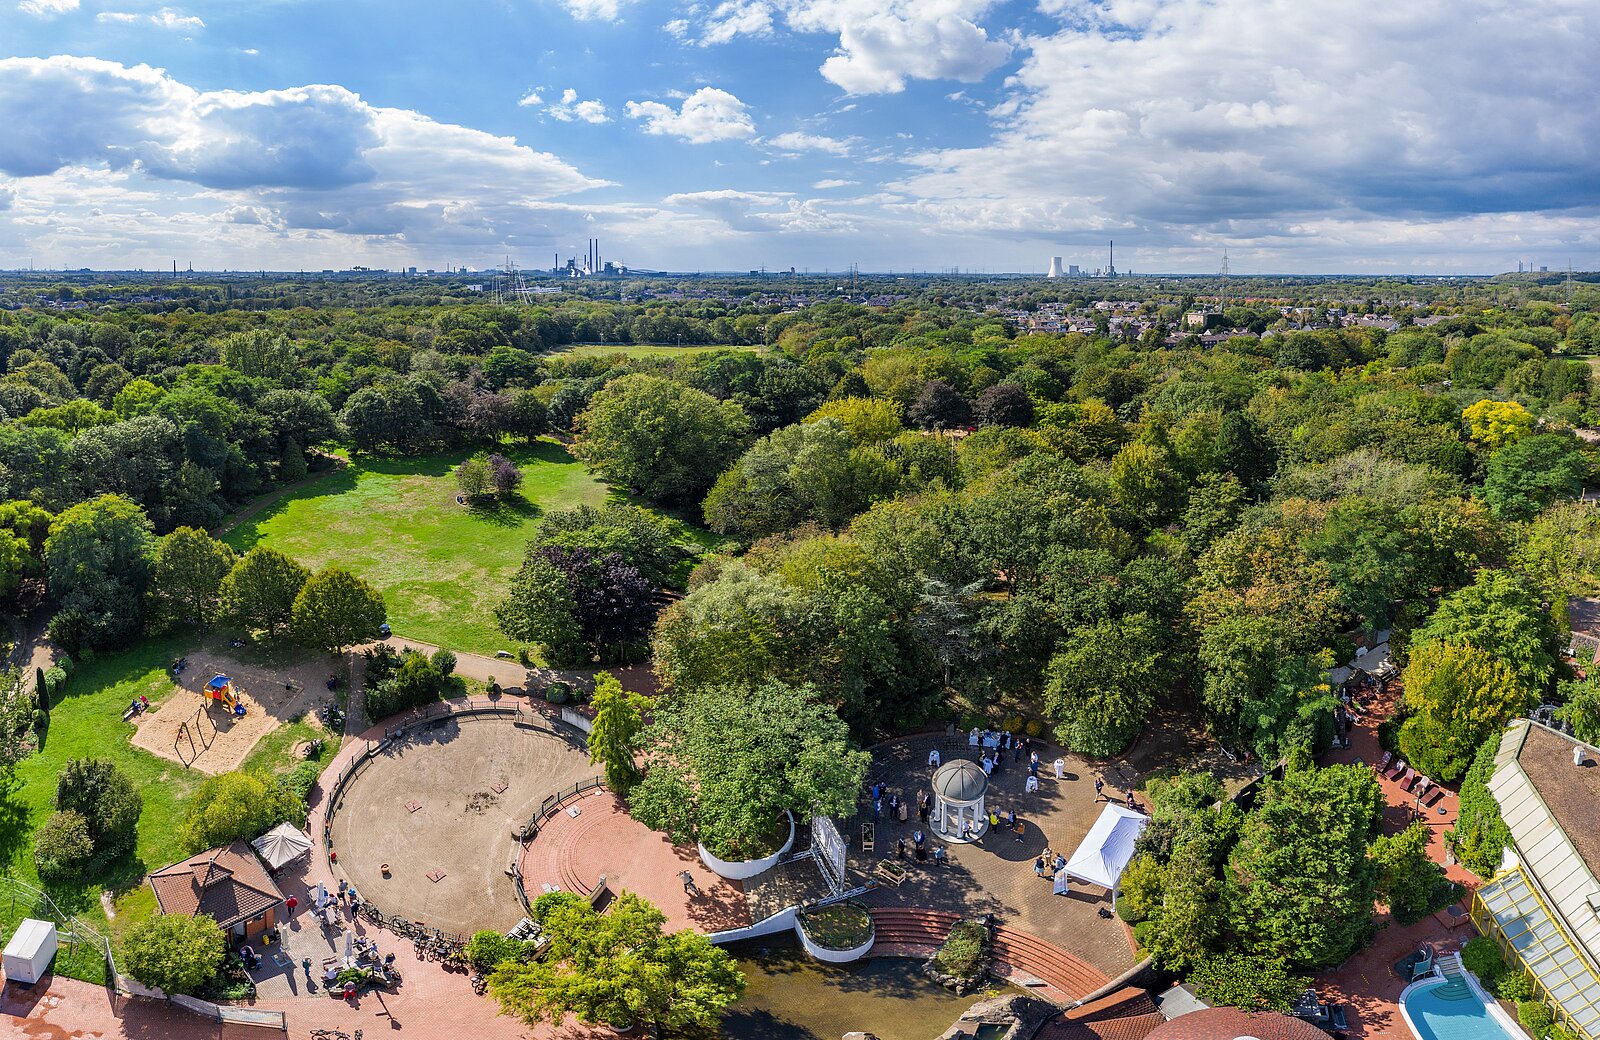 Revierpark Mattlerbusch in Duisburg aus der Vogelperspektive am 6. September 2020 - Spatenstich für die Modernisierung im Rahmen von "Zukunft und Heimat: Revierparks 2020".